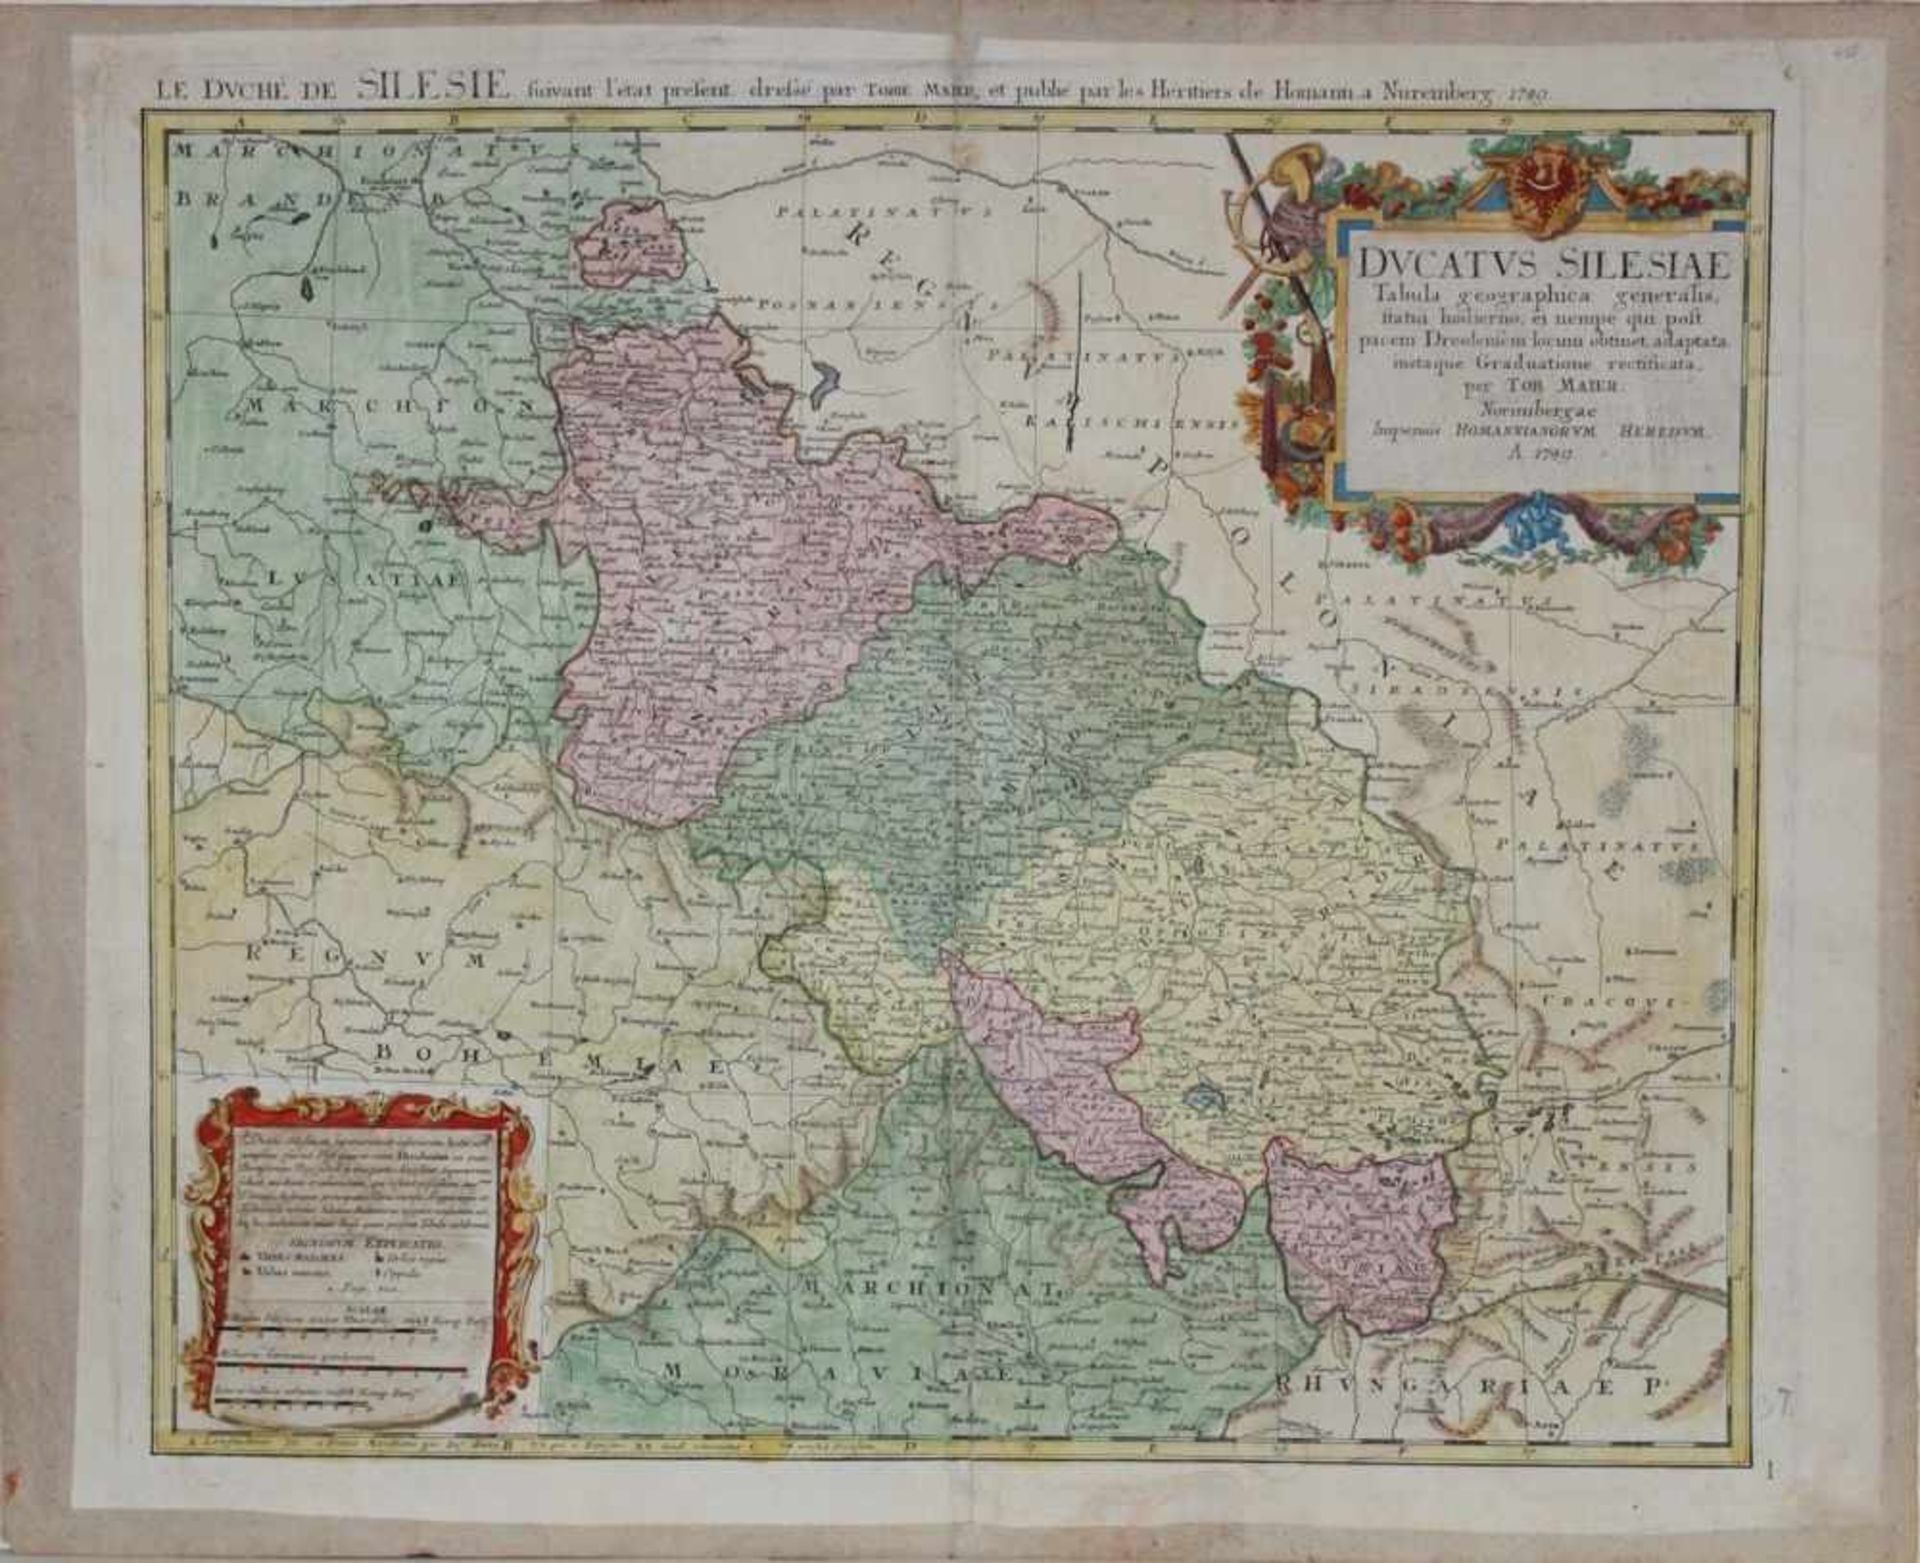 Schlesien.Kolorierte Kupferstichkarte bei Homann's Erben, in der Platte datiert 1749. Bildgröße 54 x